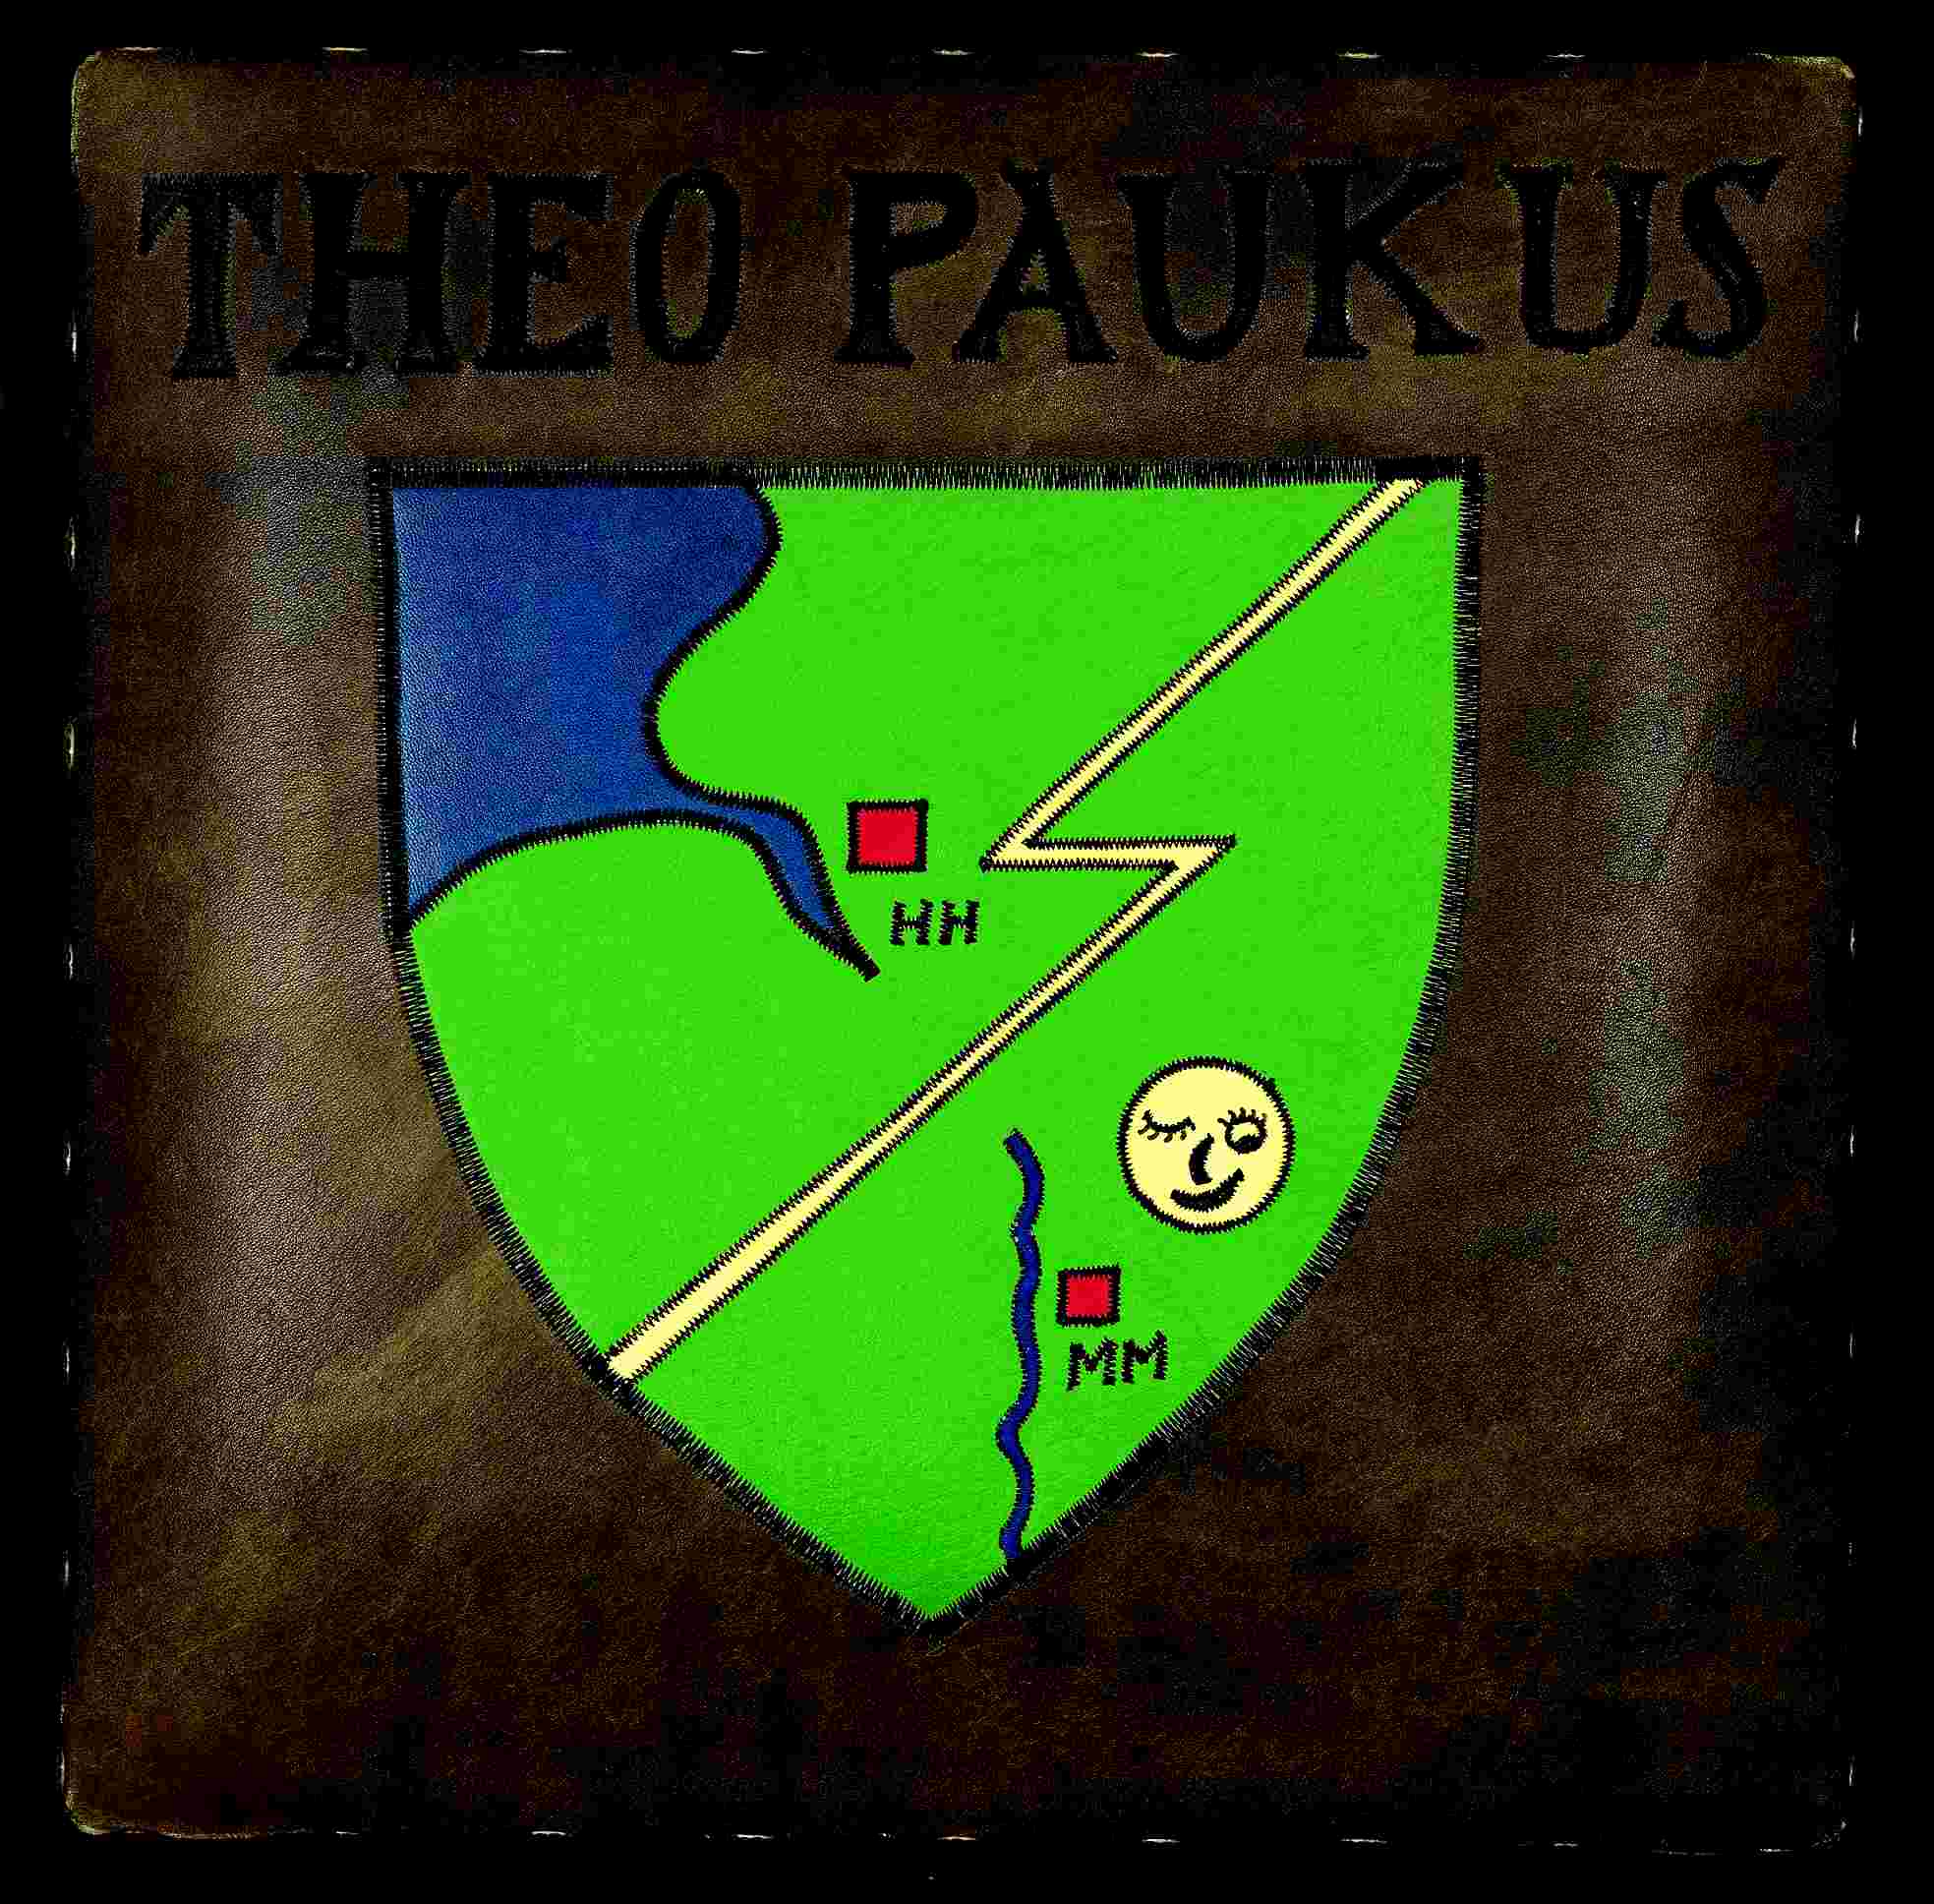 Wappen von Rt. Theopaukus